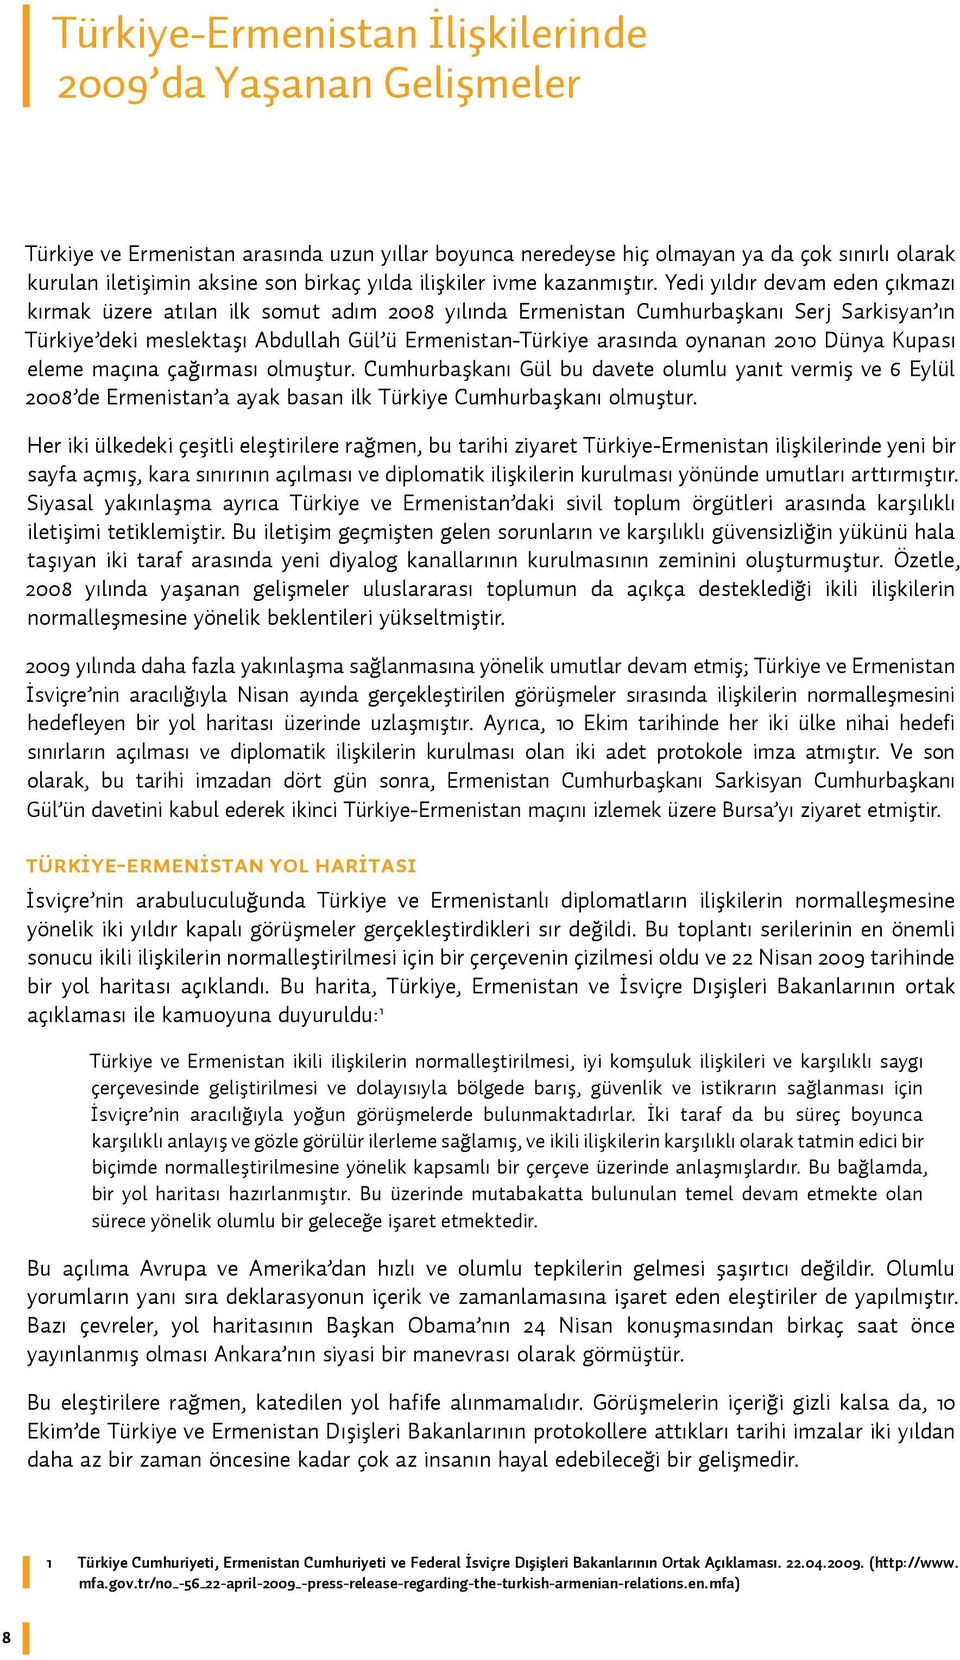 Yedi yıldır devam eden çıkmazı kırmak üzere atılan ilk somut adım 2008 yılında Ermenistan Cumhurbaşkanı Serj Sarkisyan ın Türkiye deki meslektaşı Abdullah Gül ü Ermenistan-Türkiye arasında oynanan